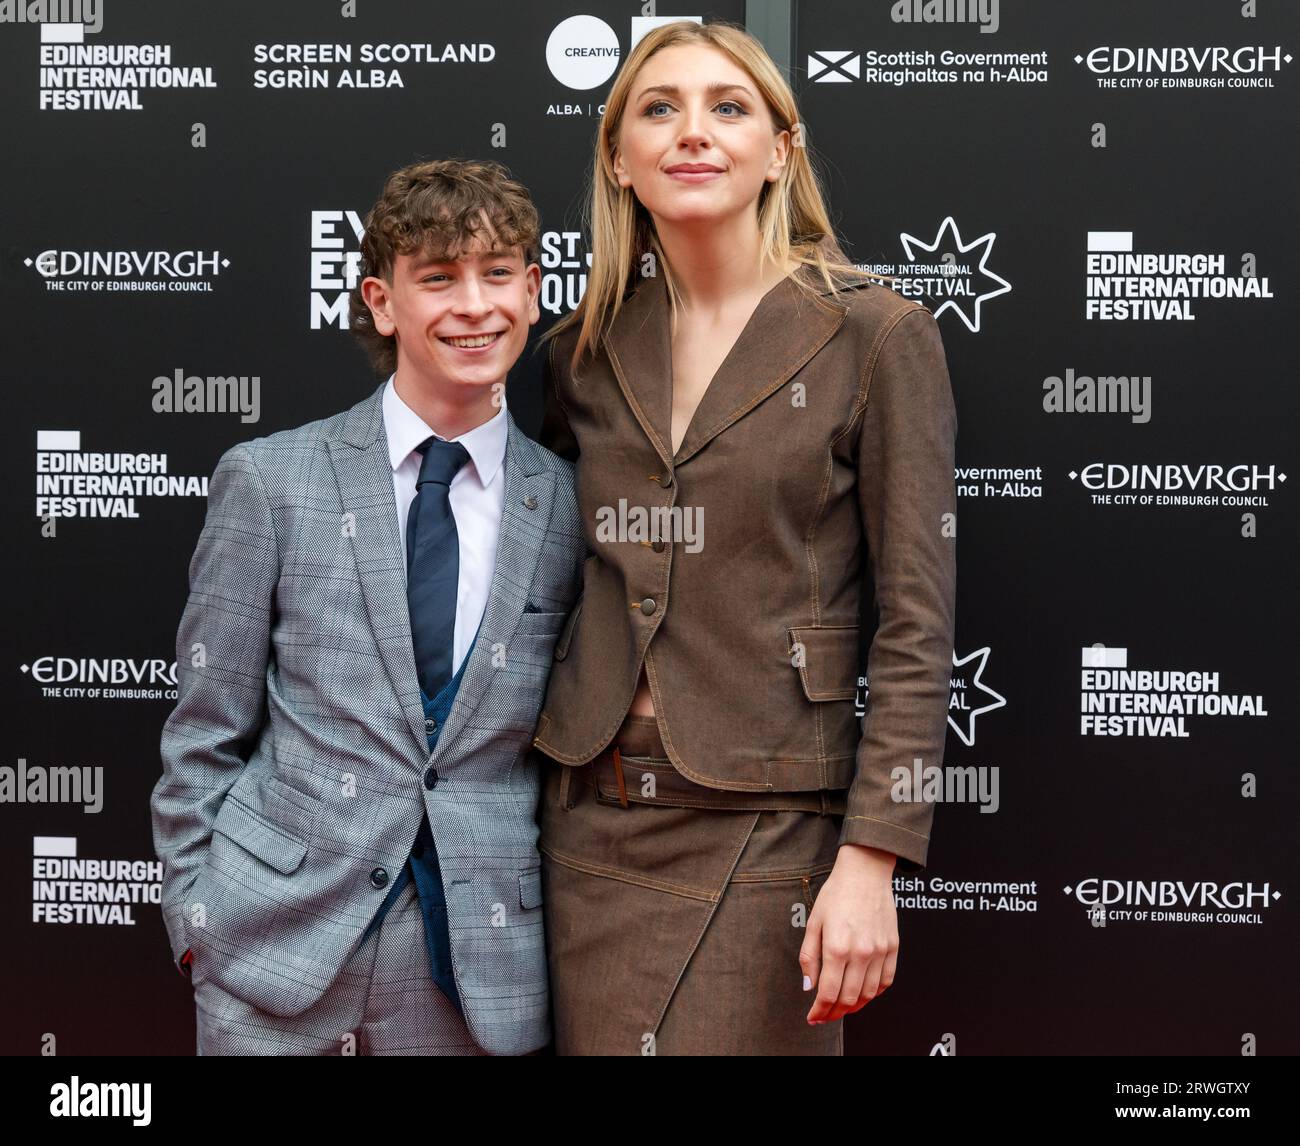 Ella Lily Hyland et Louis McCartney lors de la première de Silent Roar, Edinburgh International film Festival, Ecosse, Royaume-Uni Banque D'Images